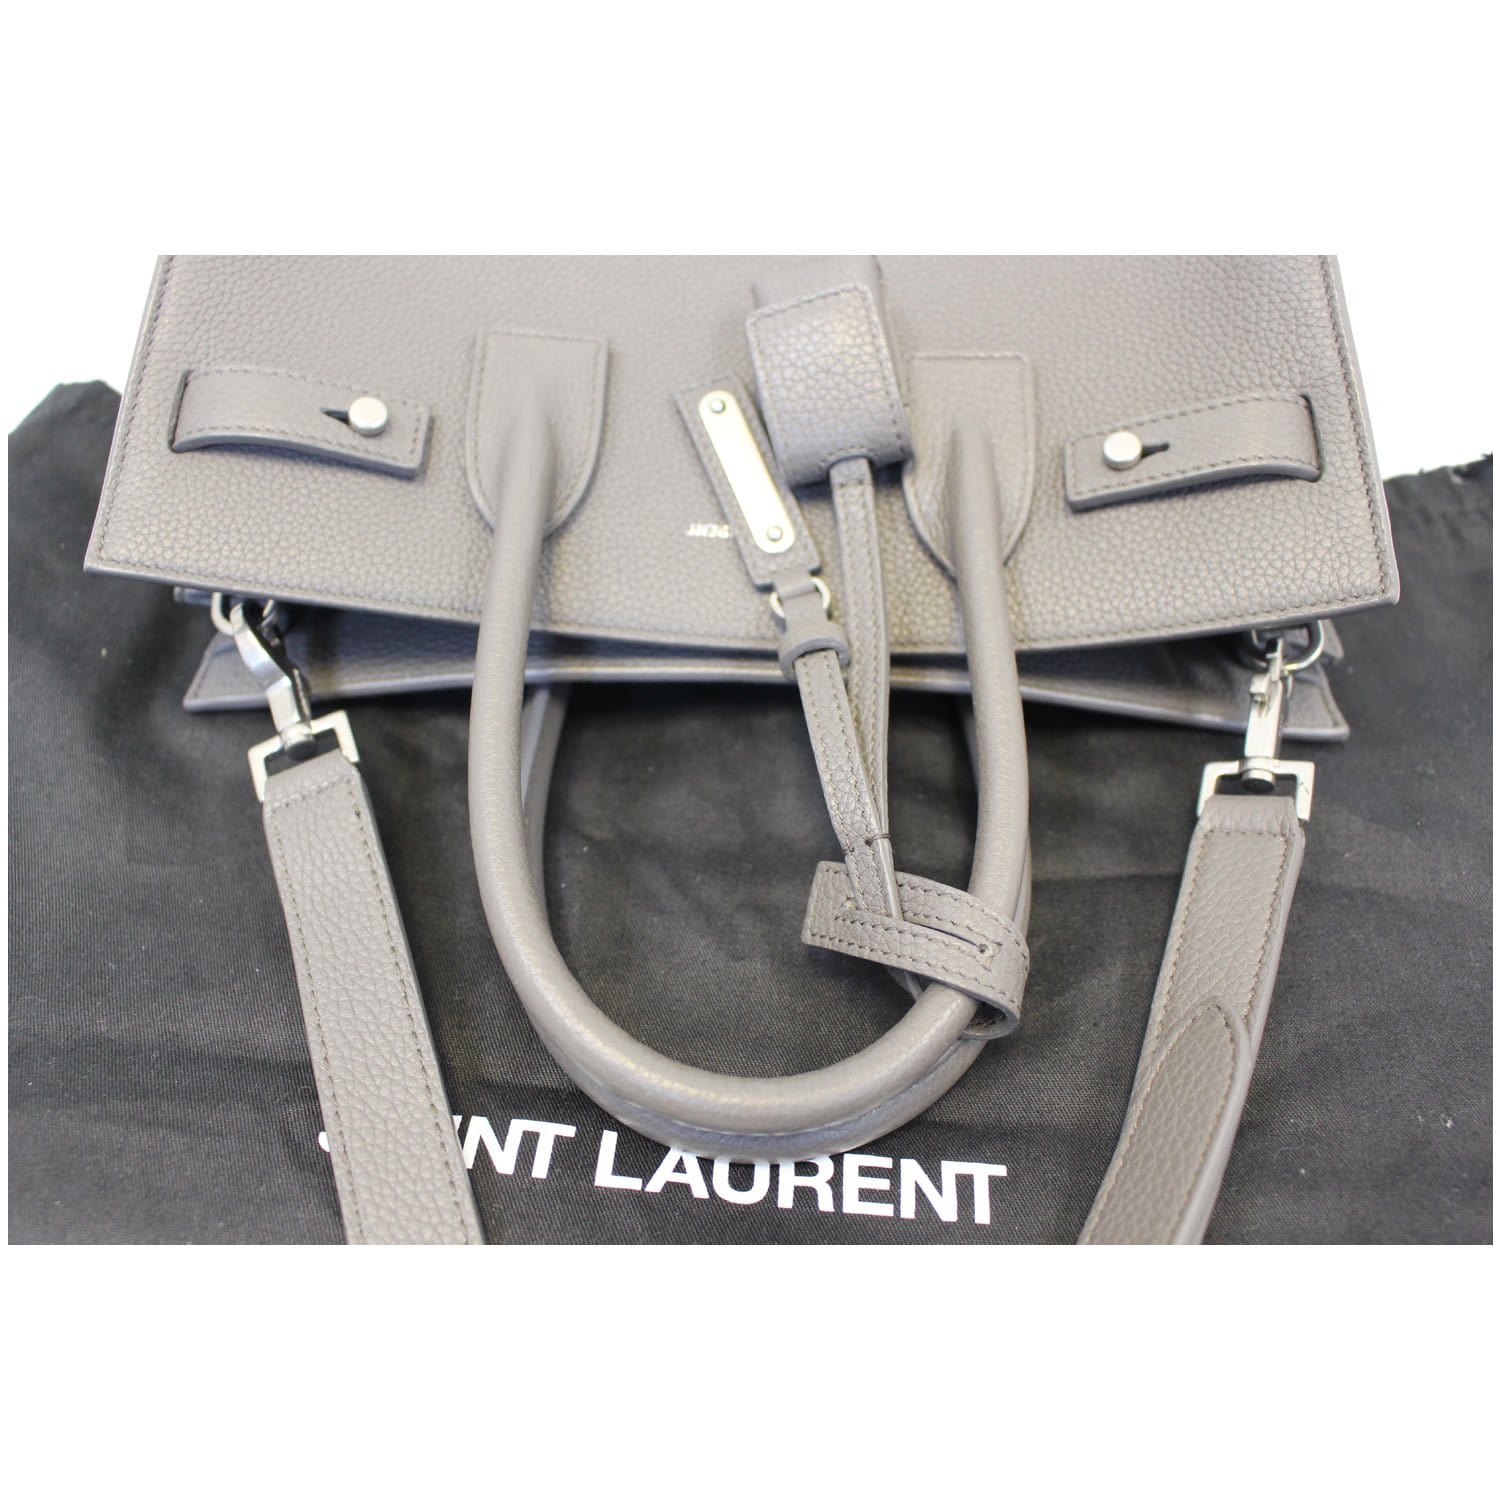 YSL Saint Laurent Sac De Jour Bag Leather Small Taupe Grey Excellent  Condition